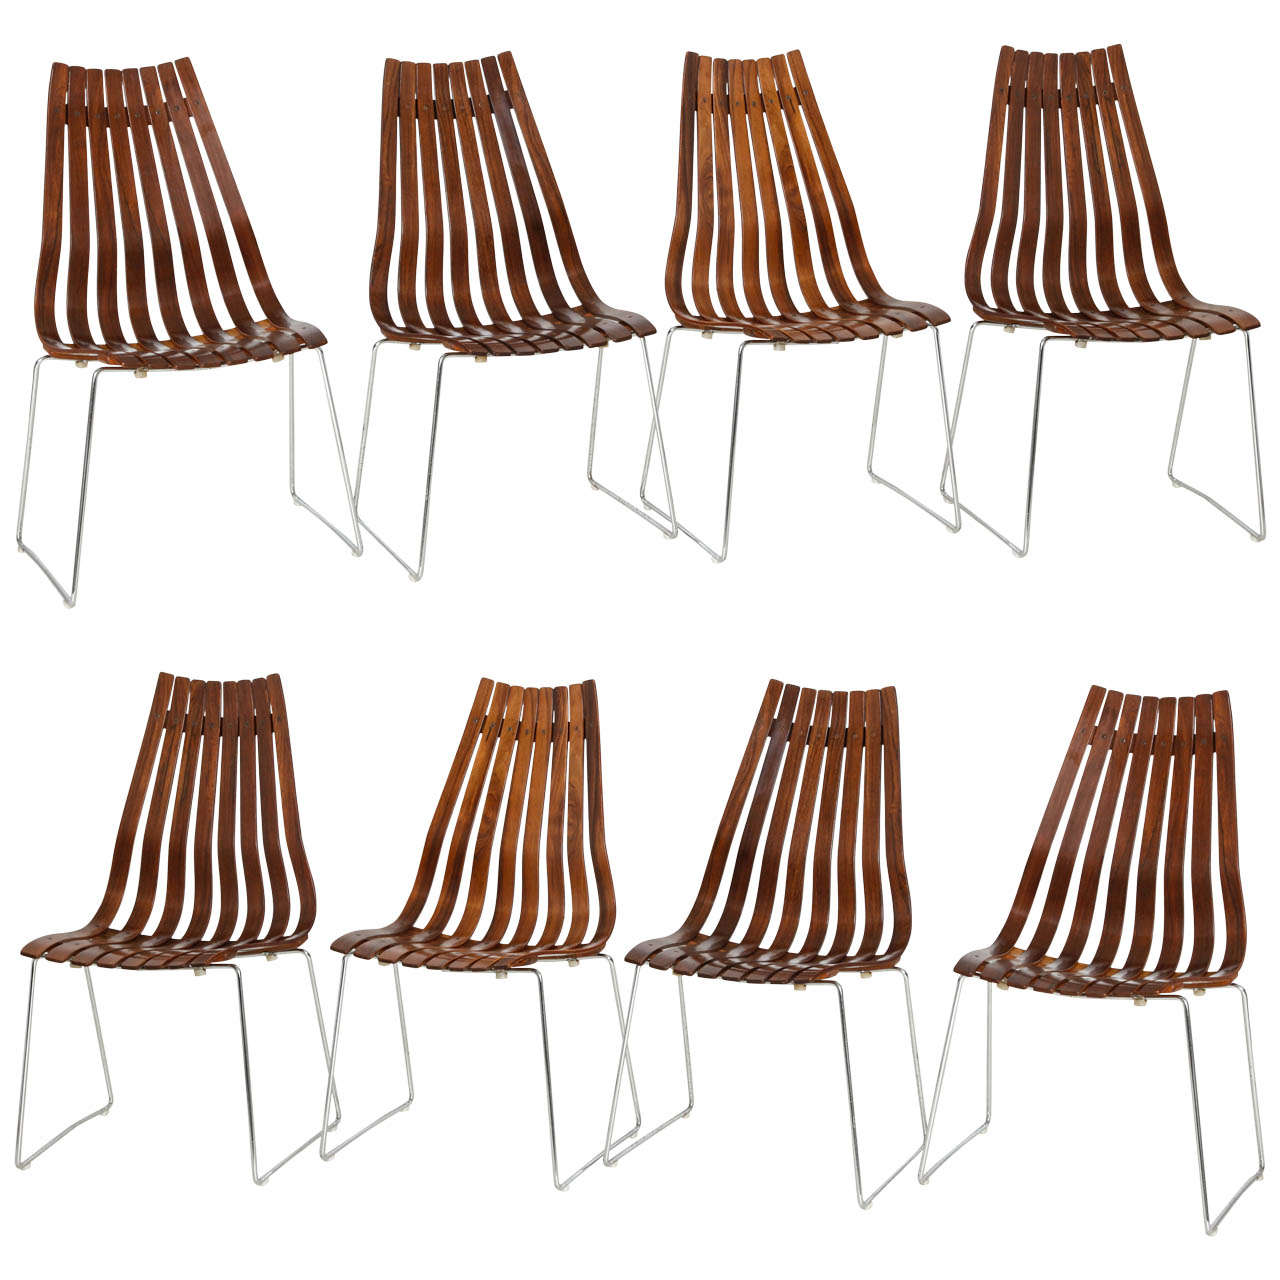 Hans Brattrud Chairs